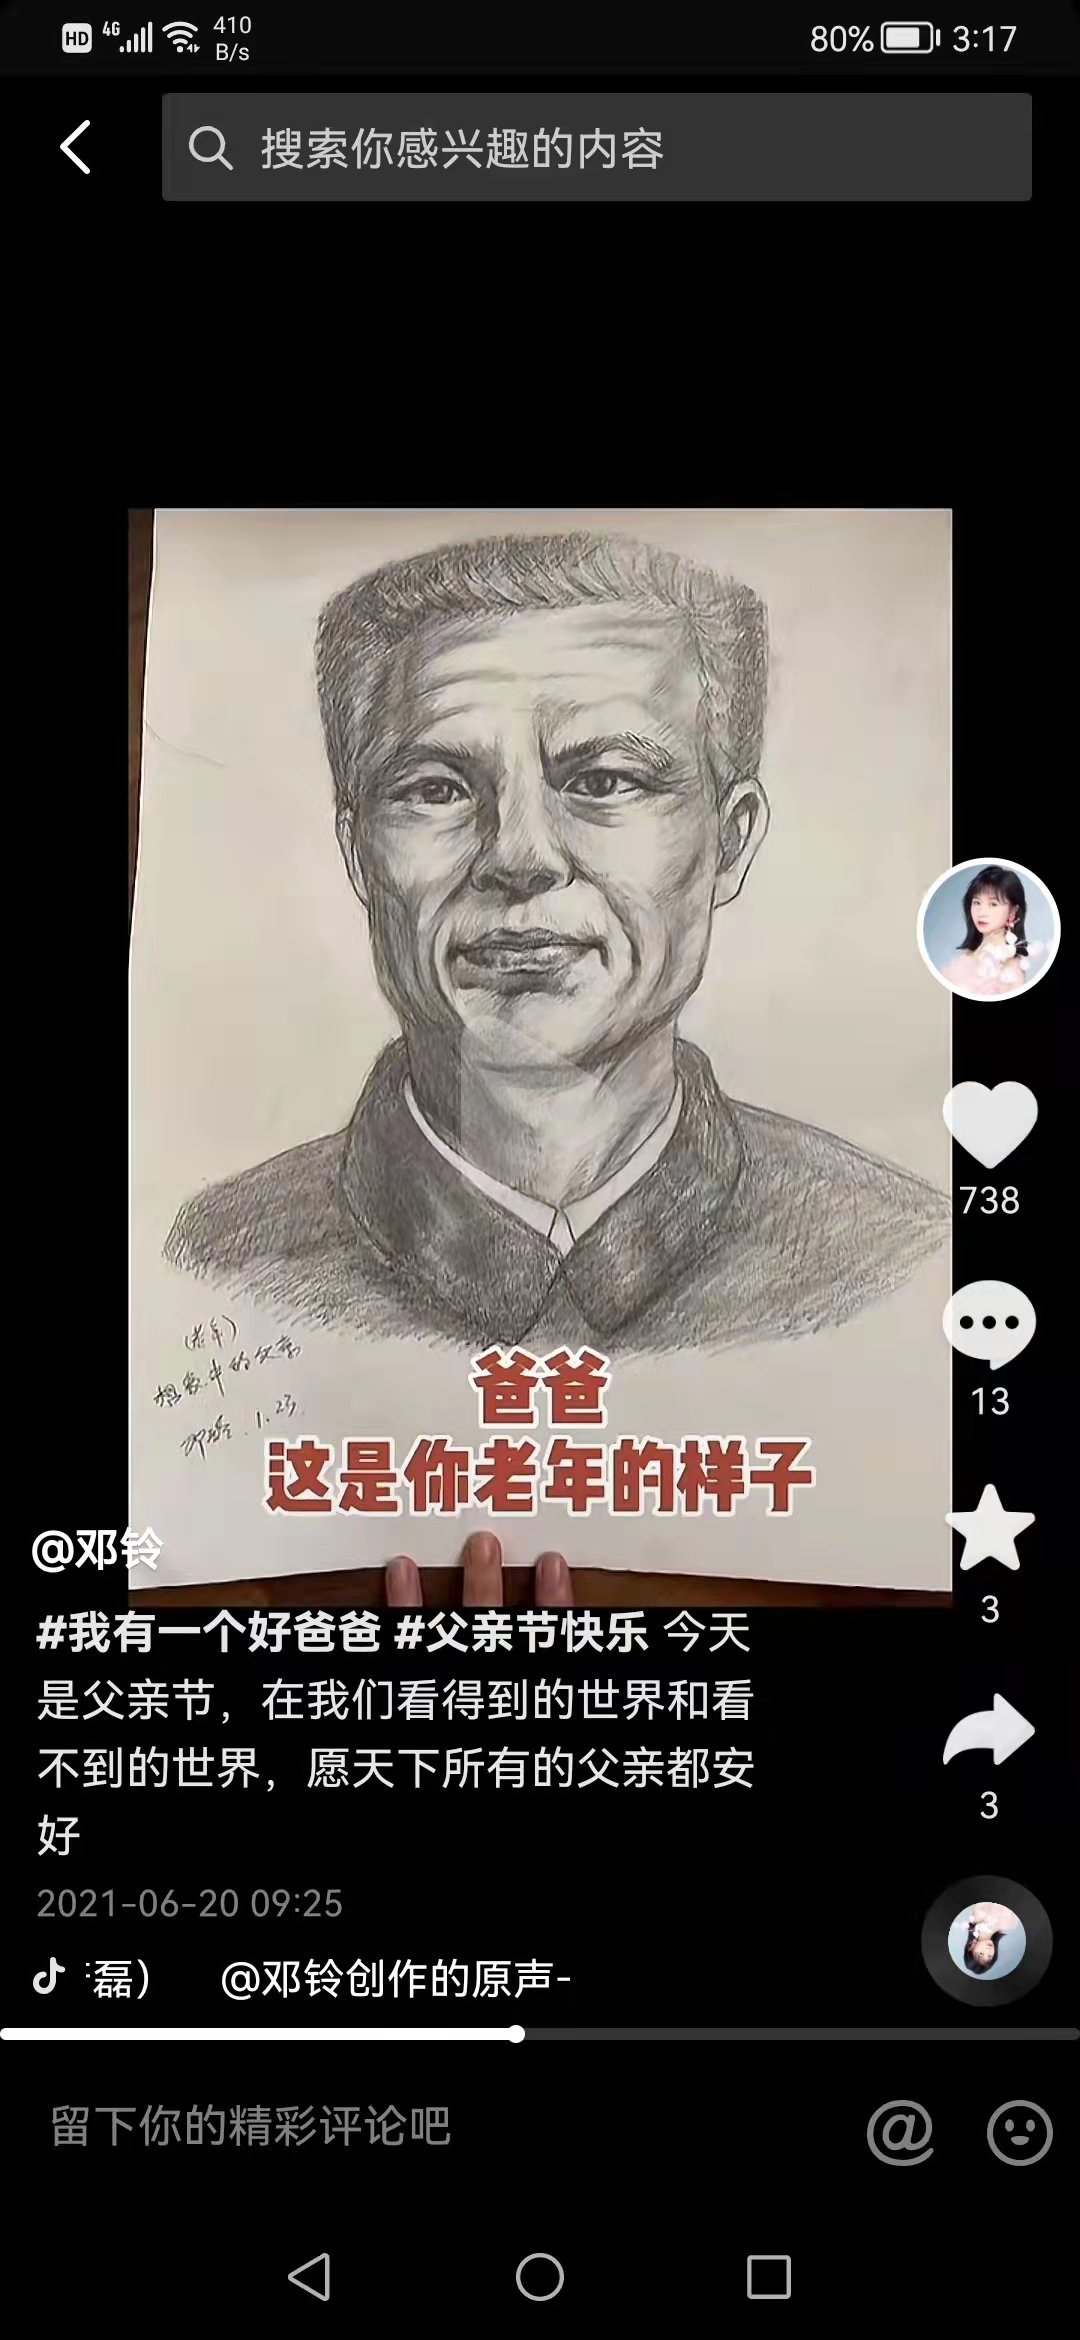 去年父亲节时，邓铃在社交网络上发布的想象中的父亲老年画像。邓铃社交网络截图。